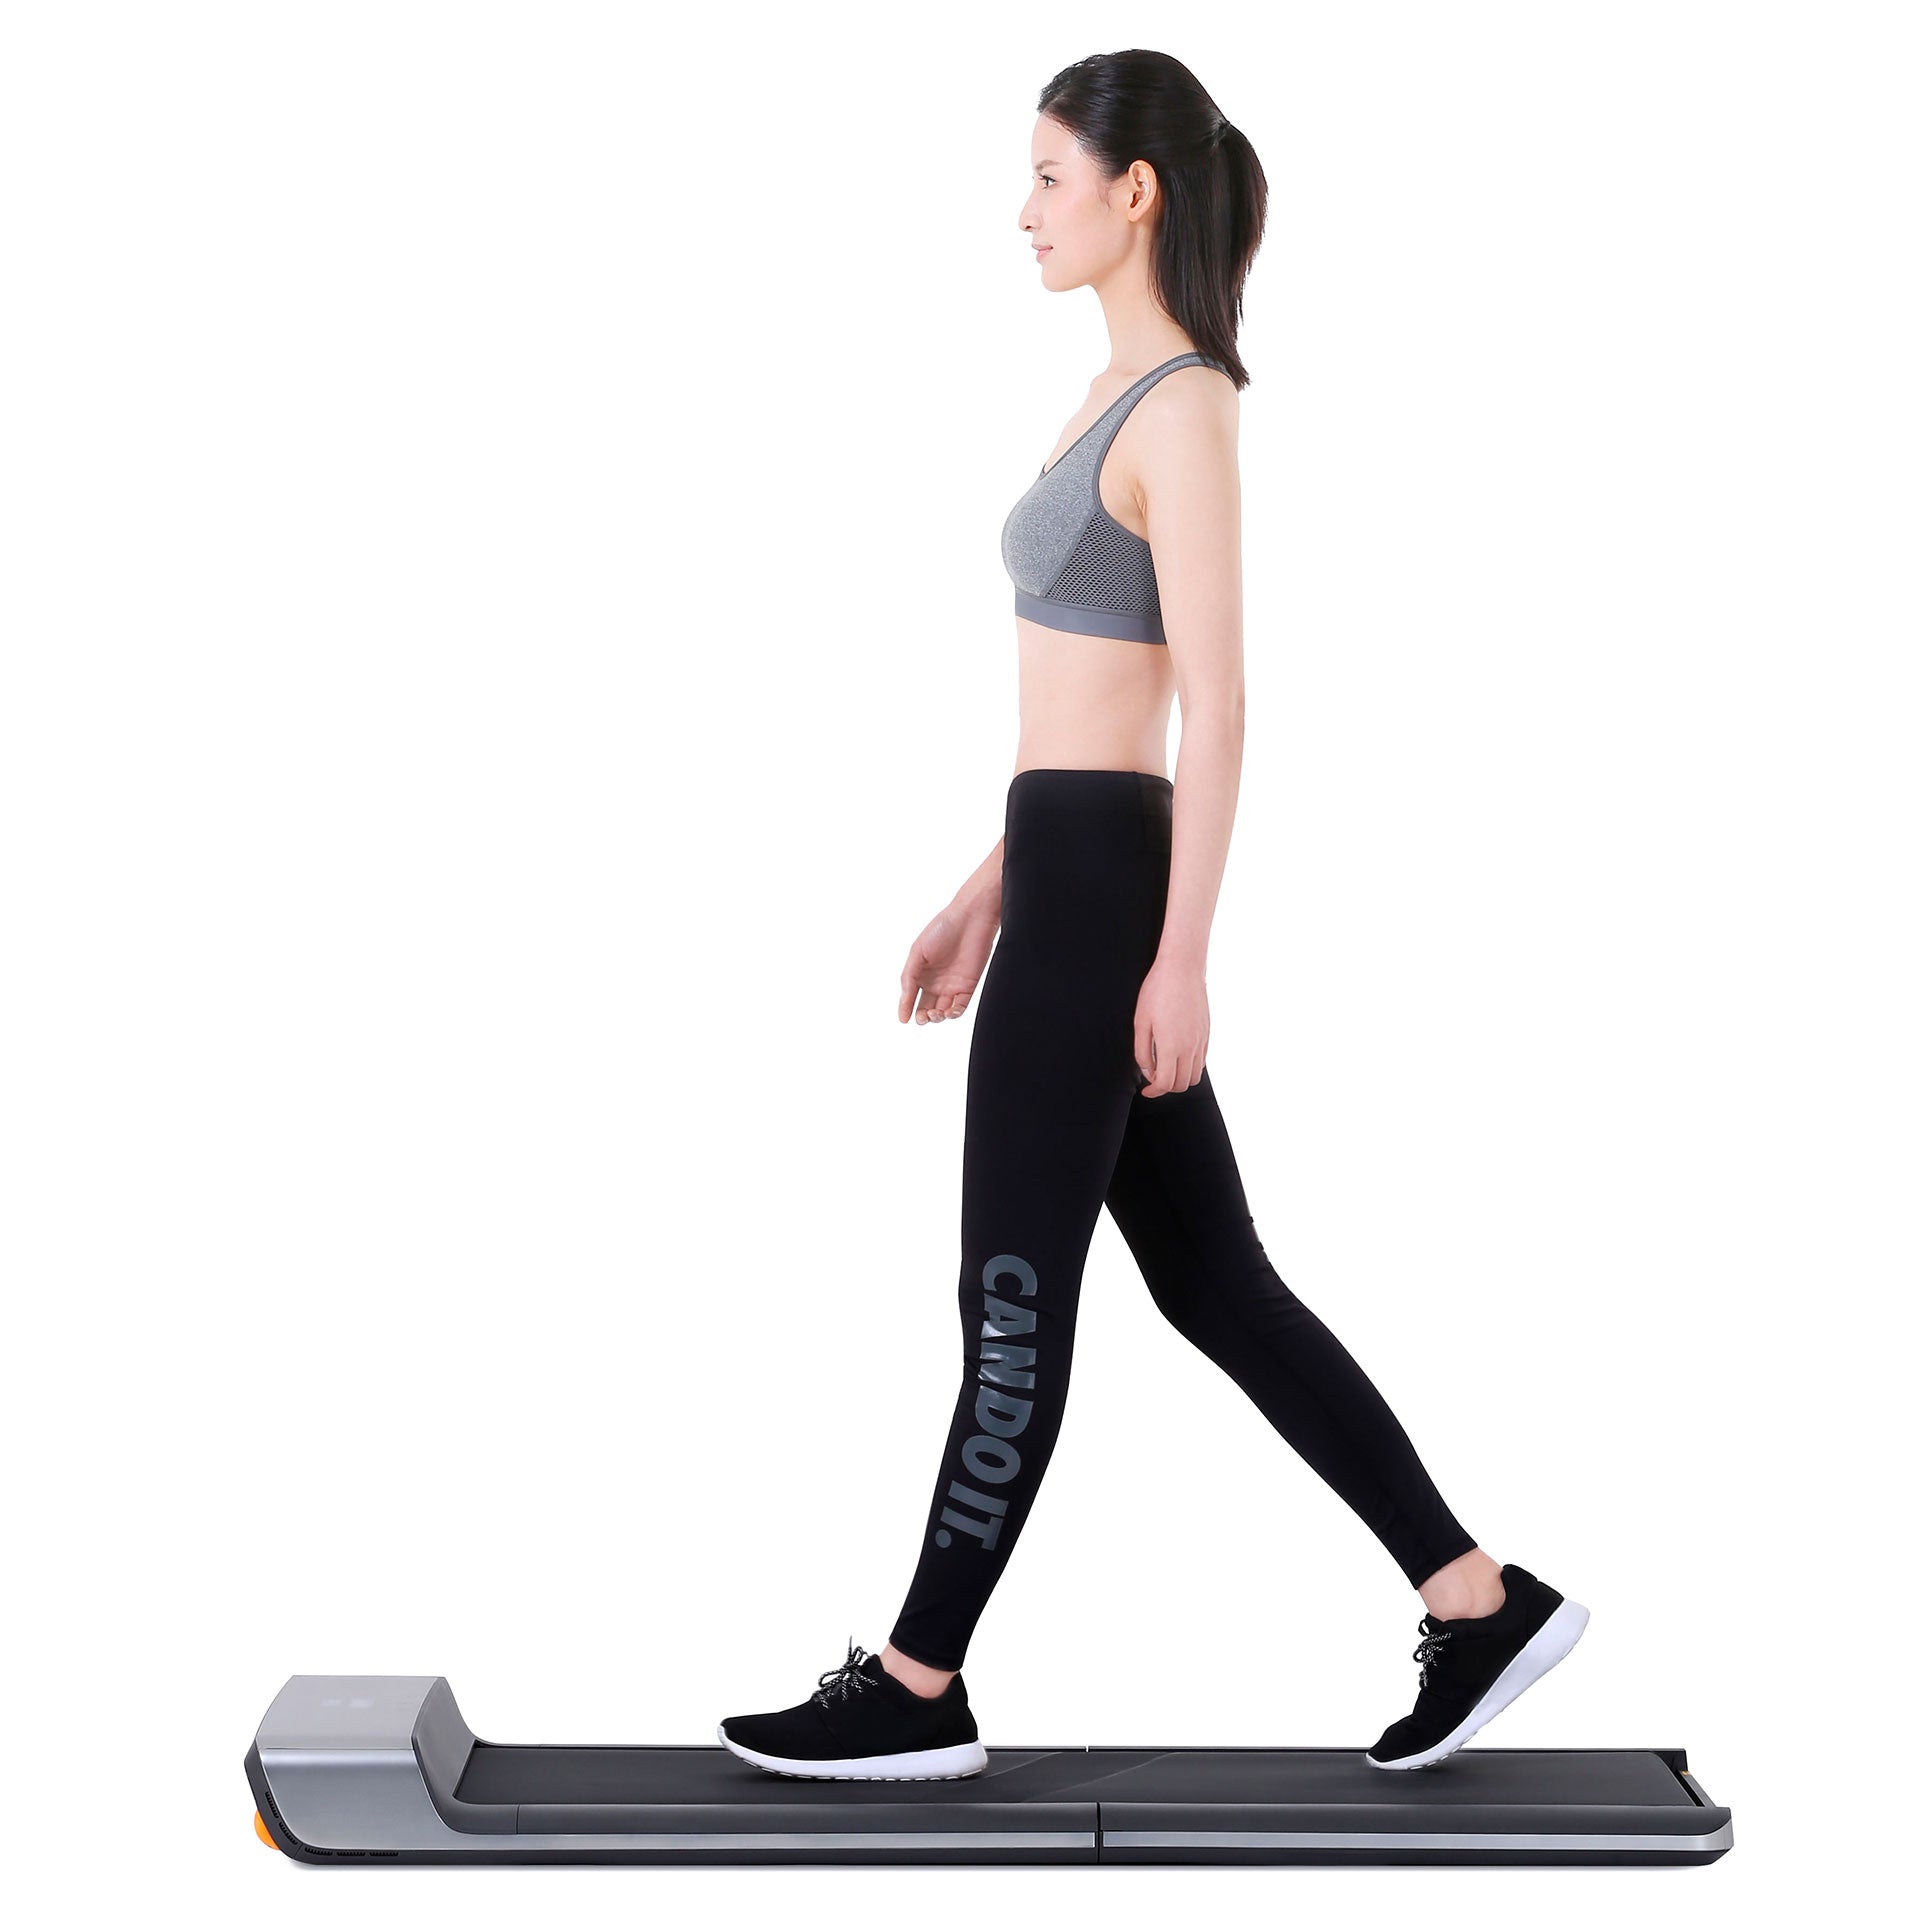 WalkingPad treadmill